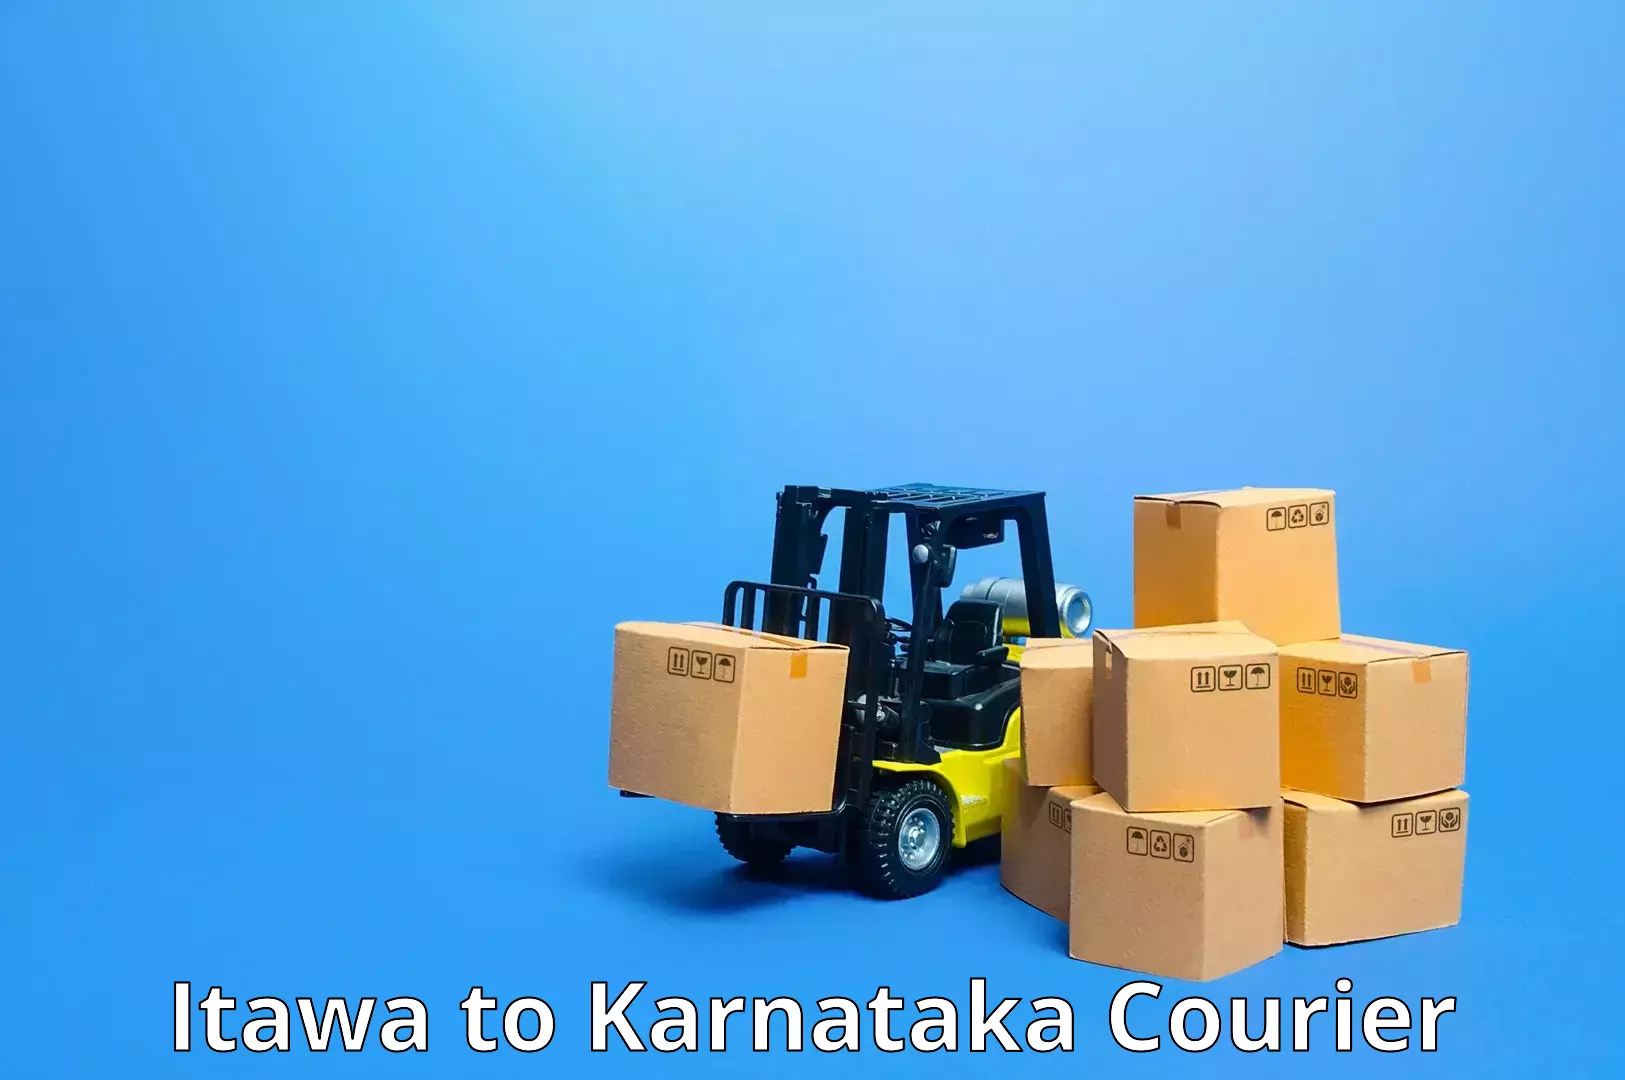 Global logistics network Itawa to Anavatti